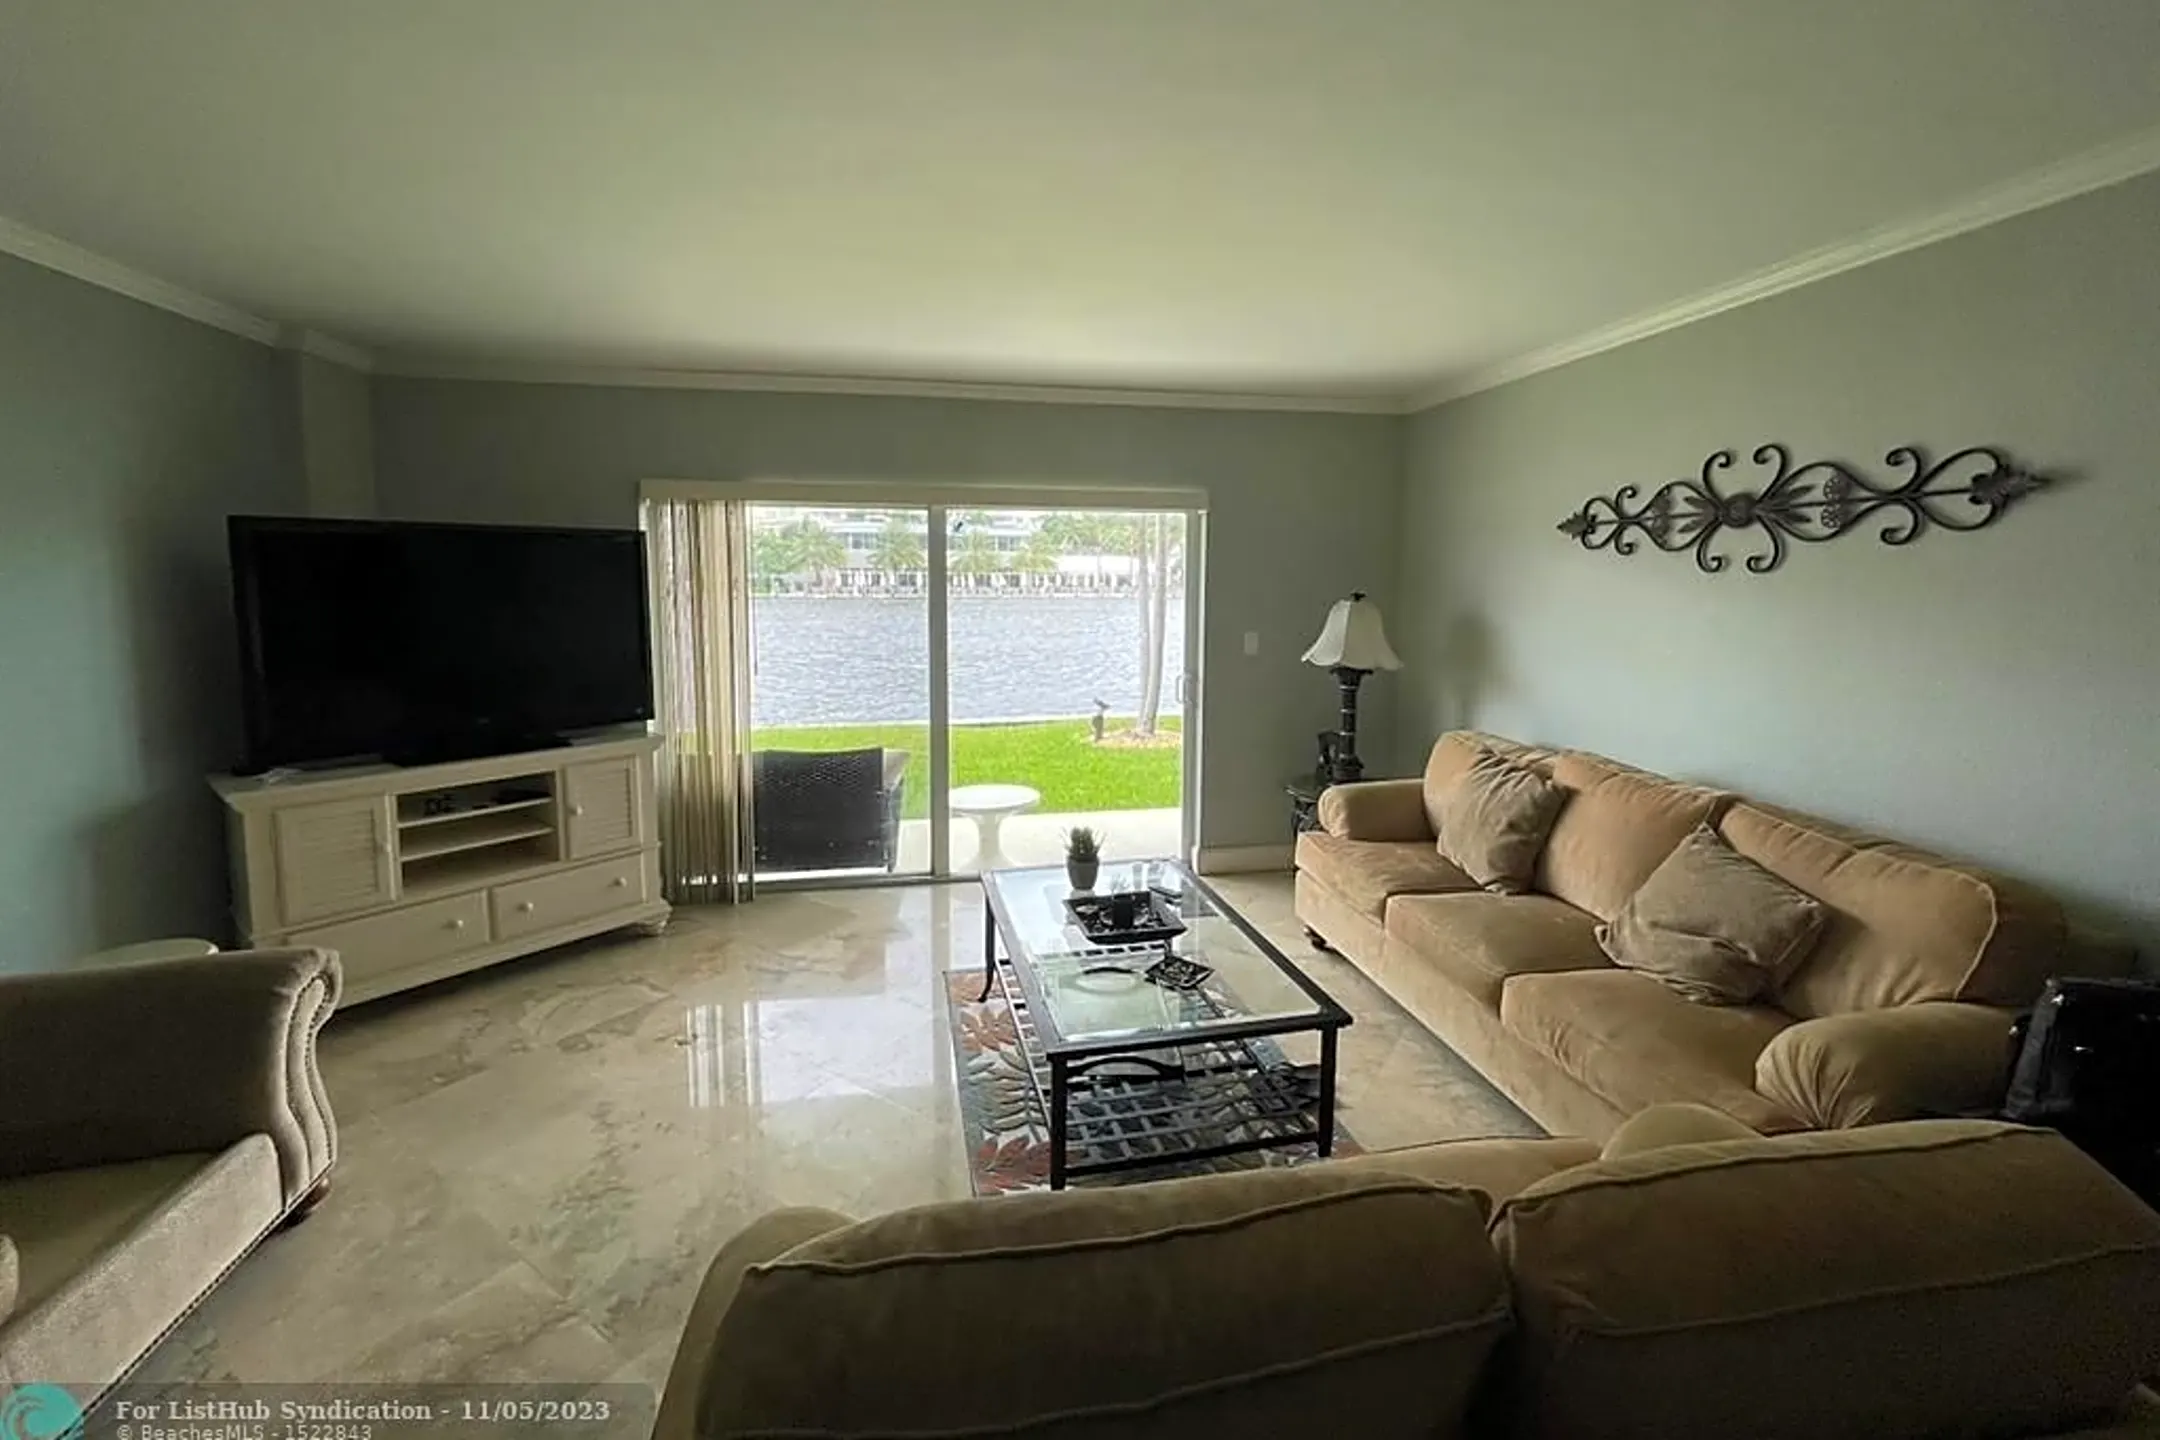 Living Room - 2900 NE 30th St #M1 - Fort Lauderdale, FL